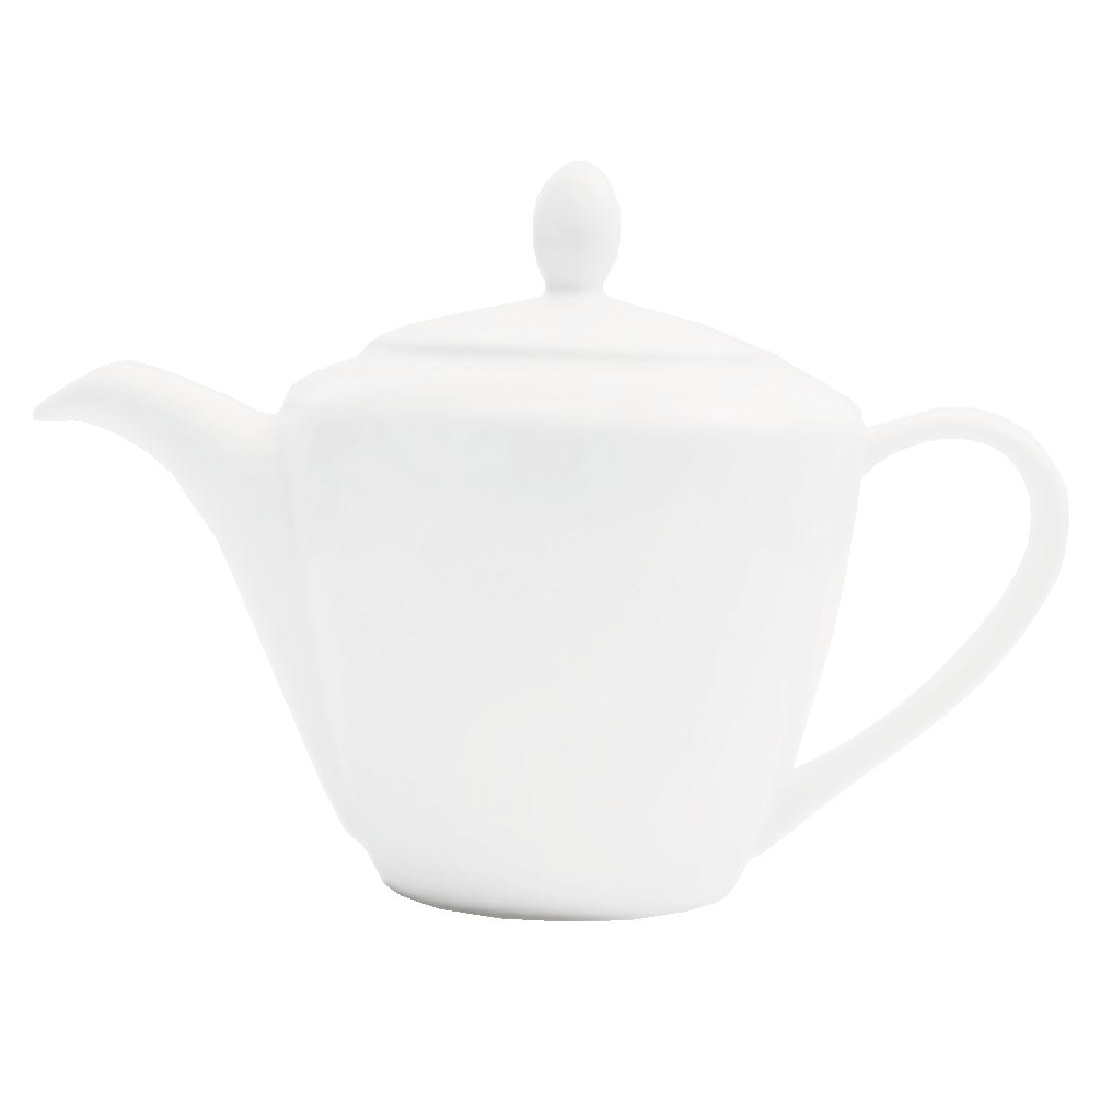 Steelite Simplicity White Teapots Harmony 597ml